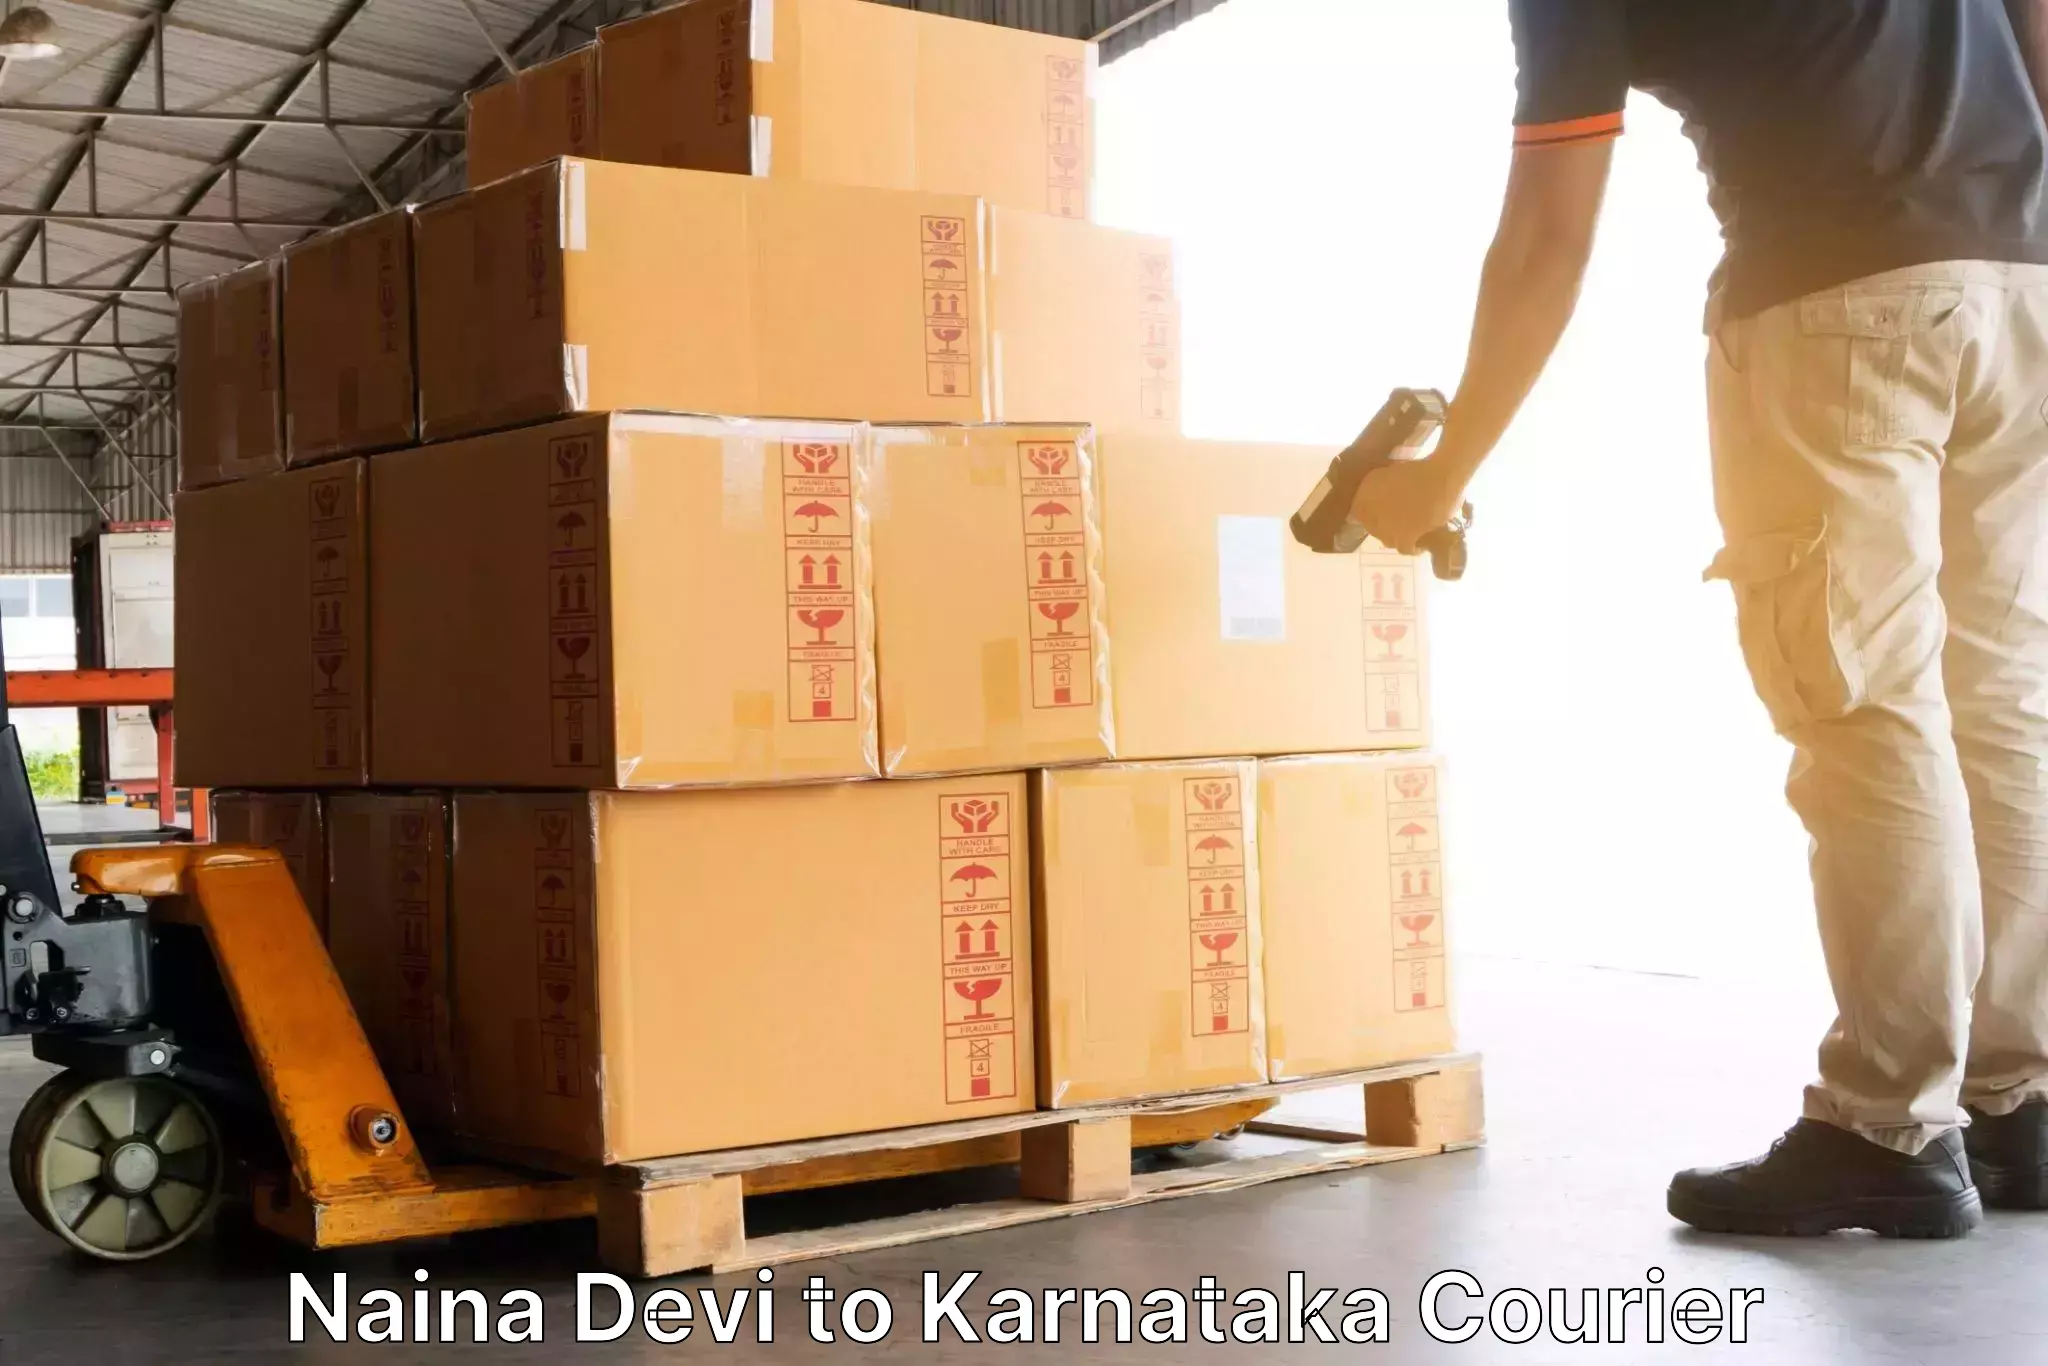 Express delivery capabilities Naina Devi to Udupi